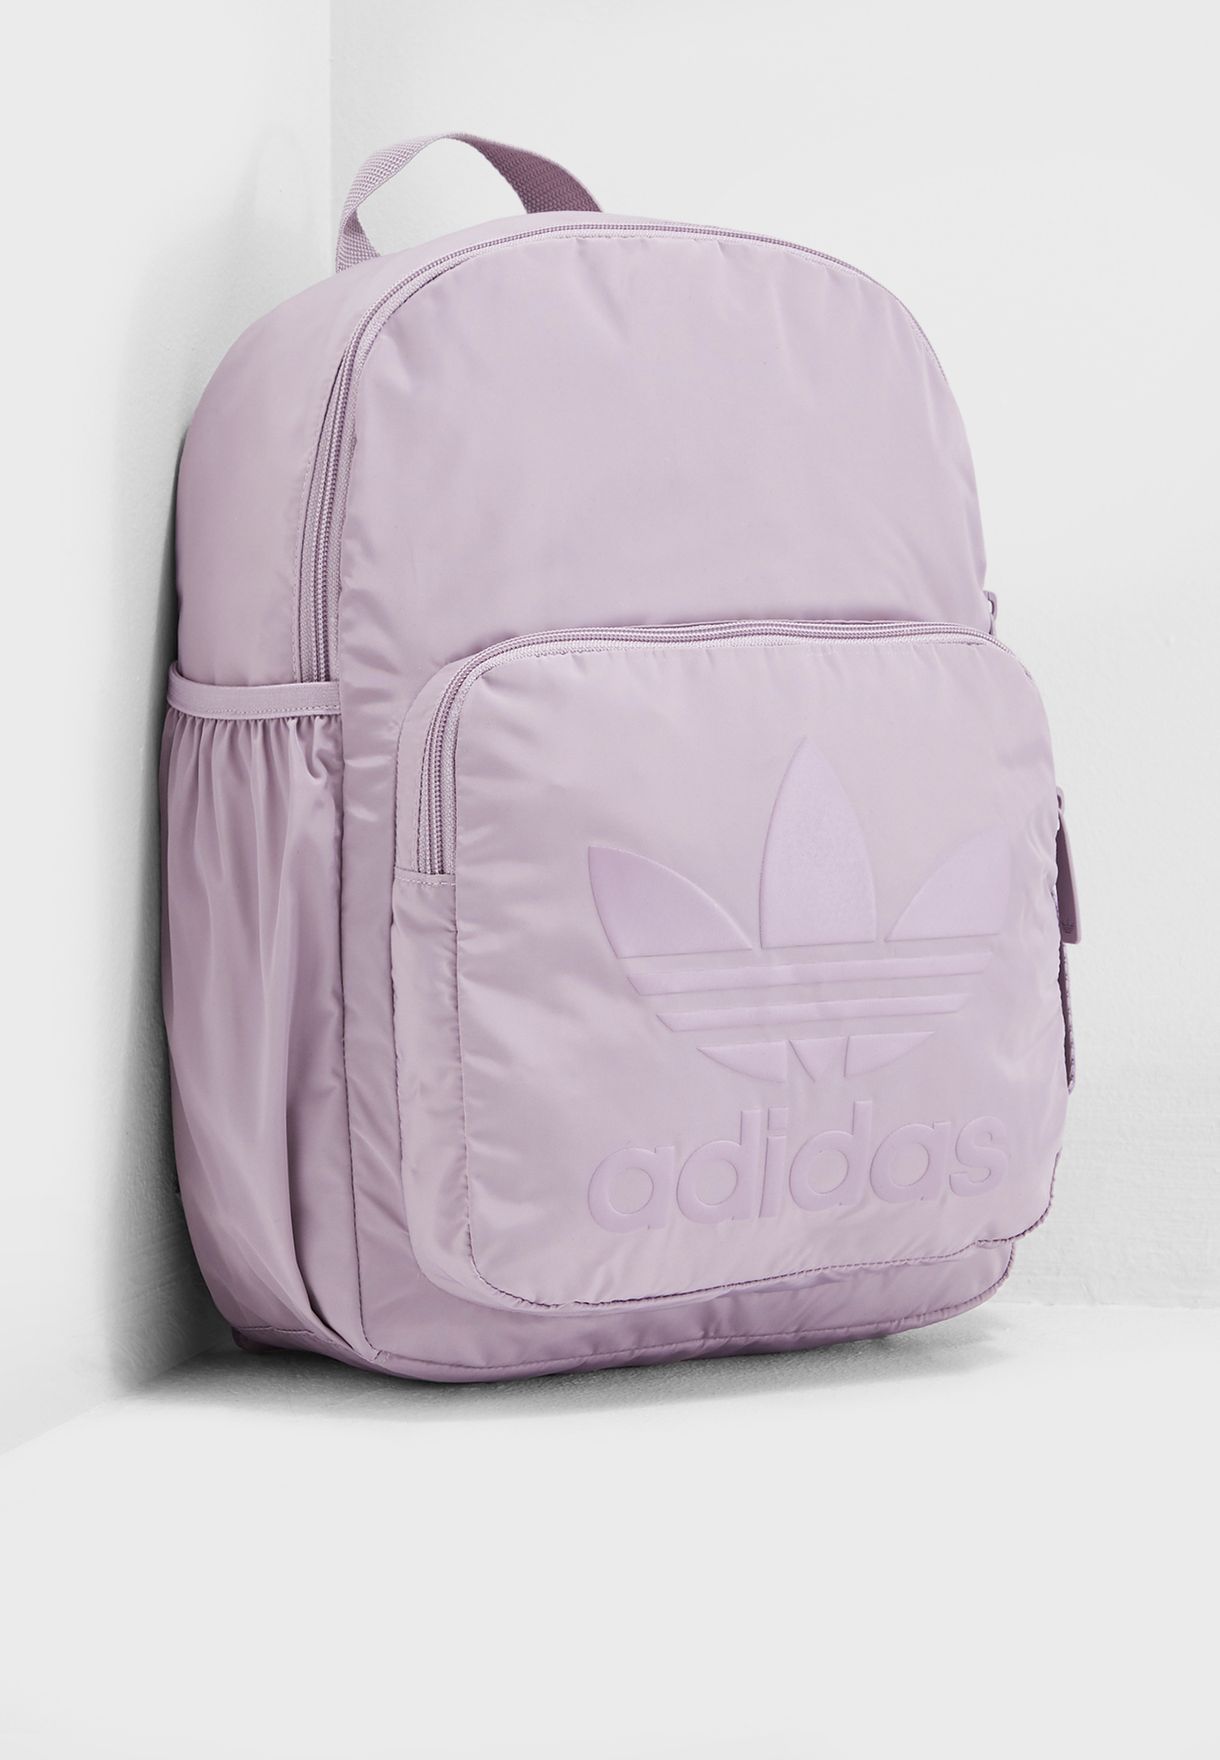 purple adidas backpack